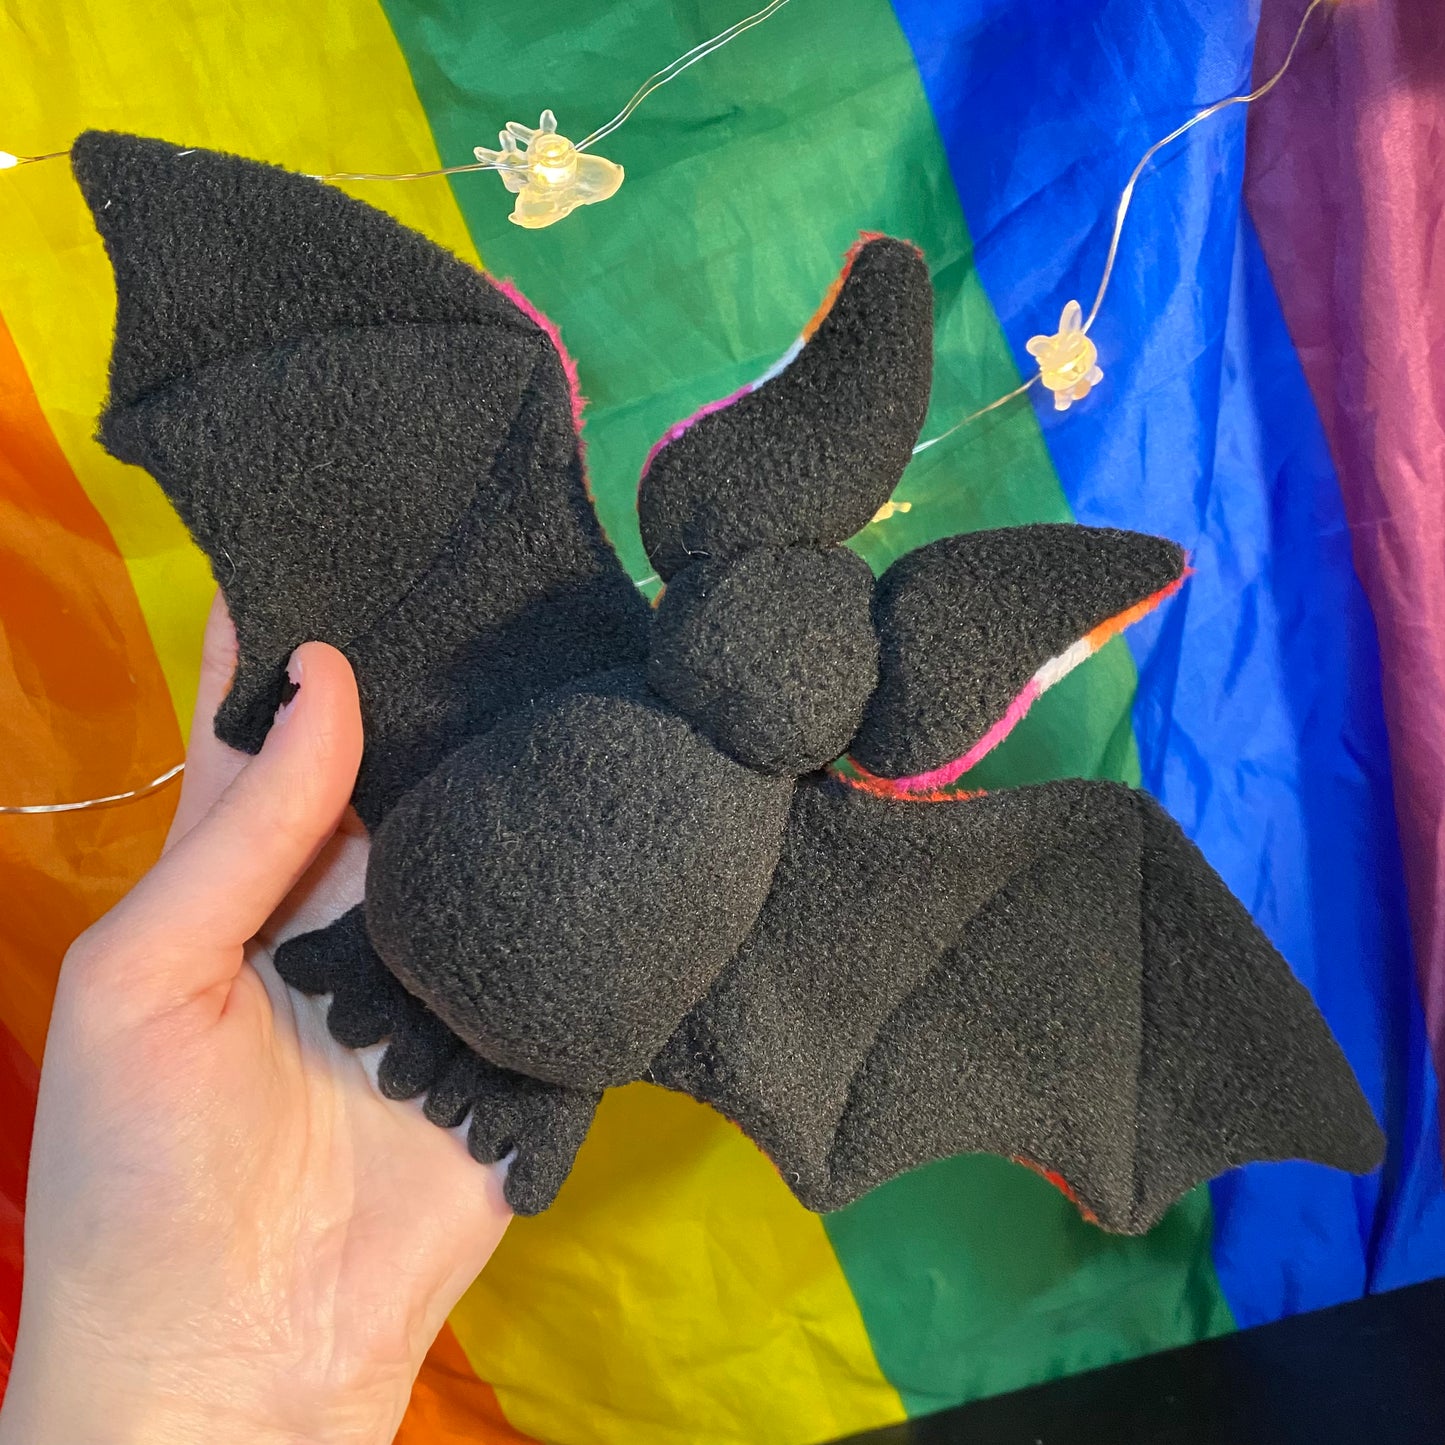 Autistic Bat plushie